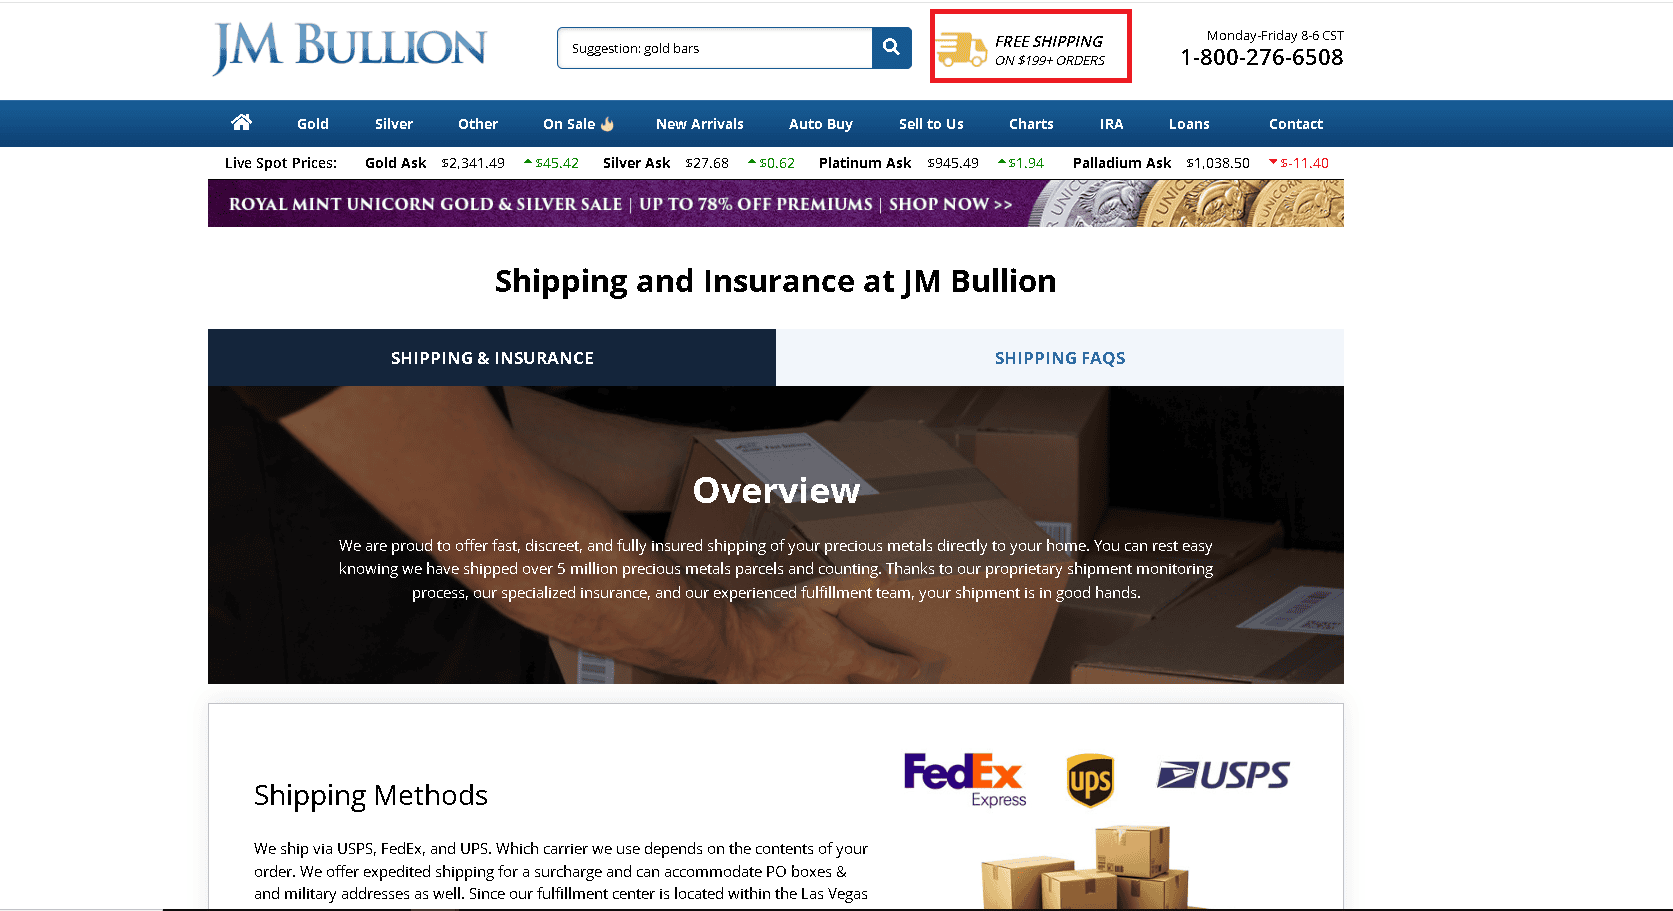 JM Bullion offer free shipping